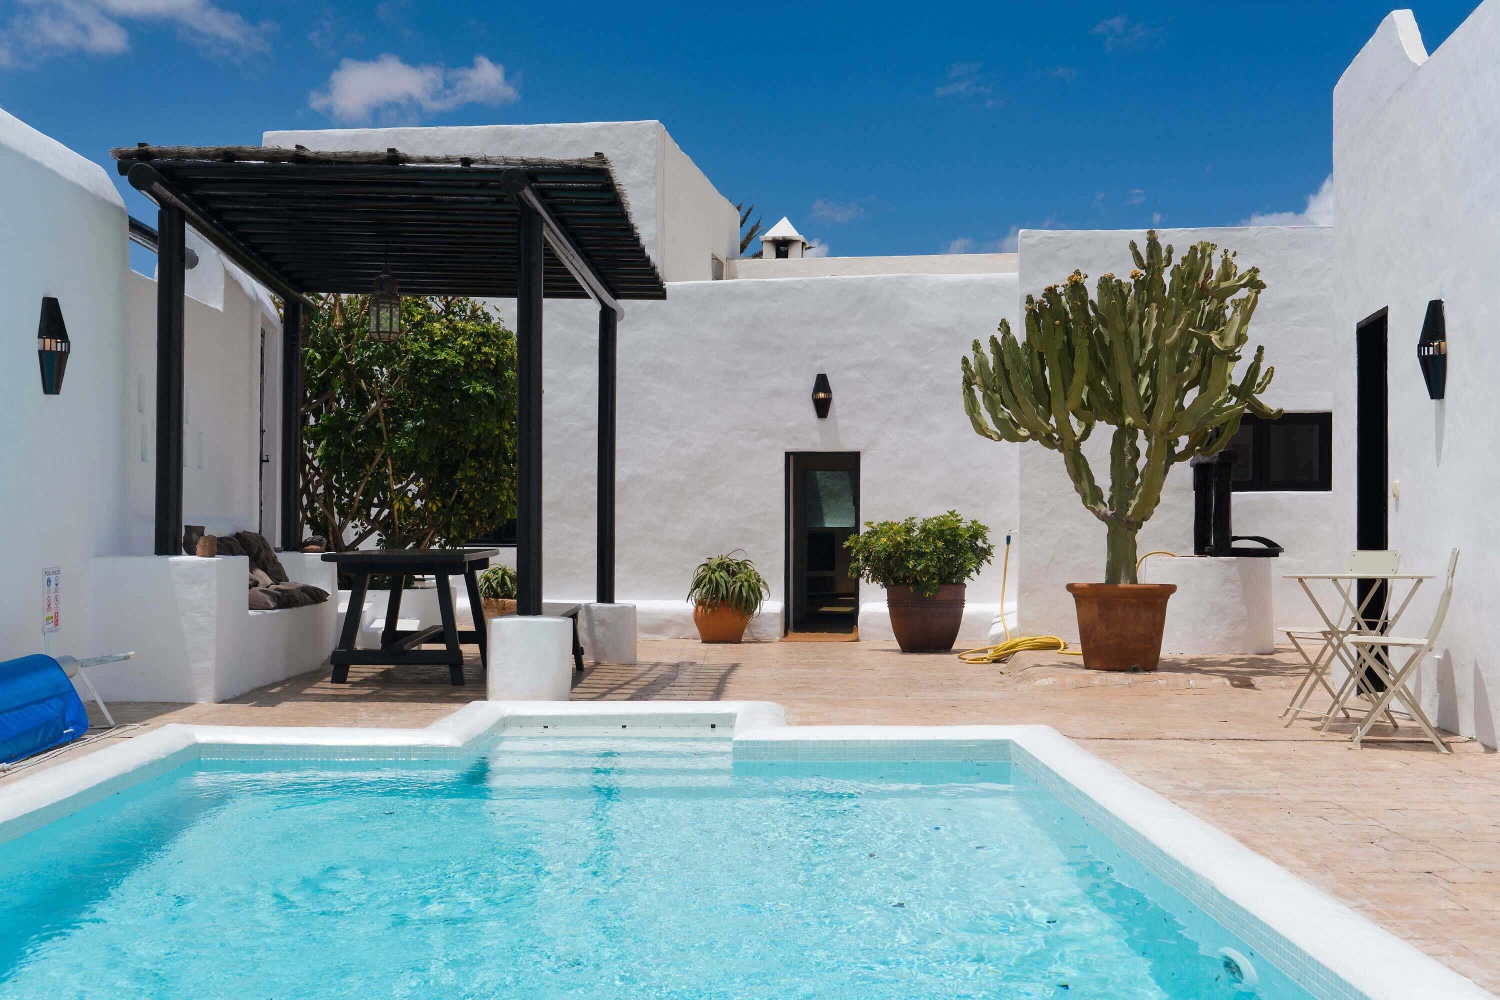 Luksusowy dom z prywatnym podgrzewanym basenem i idealną lokalizacją do zwiedzania reszty Lanzarote